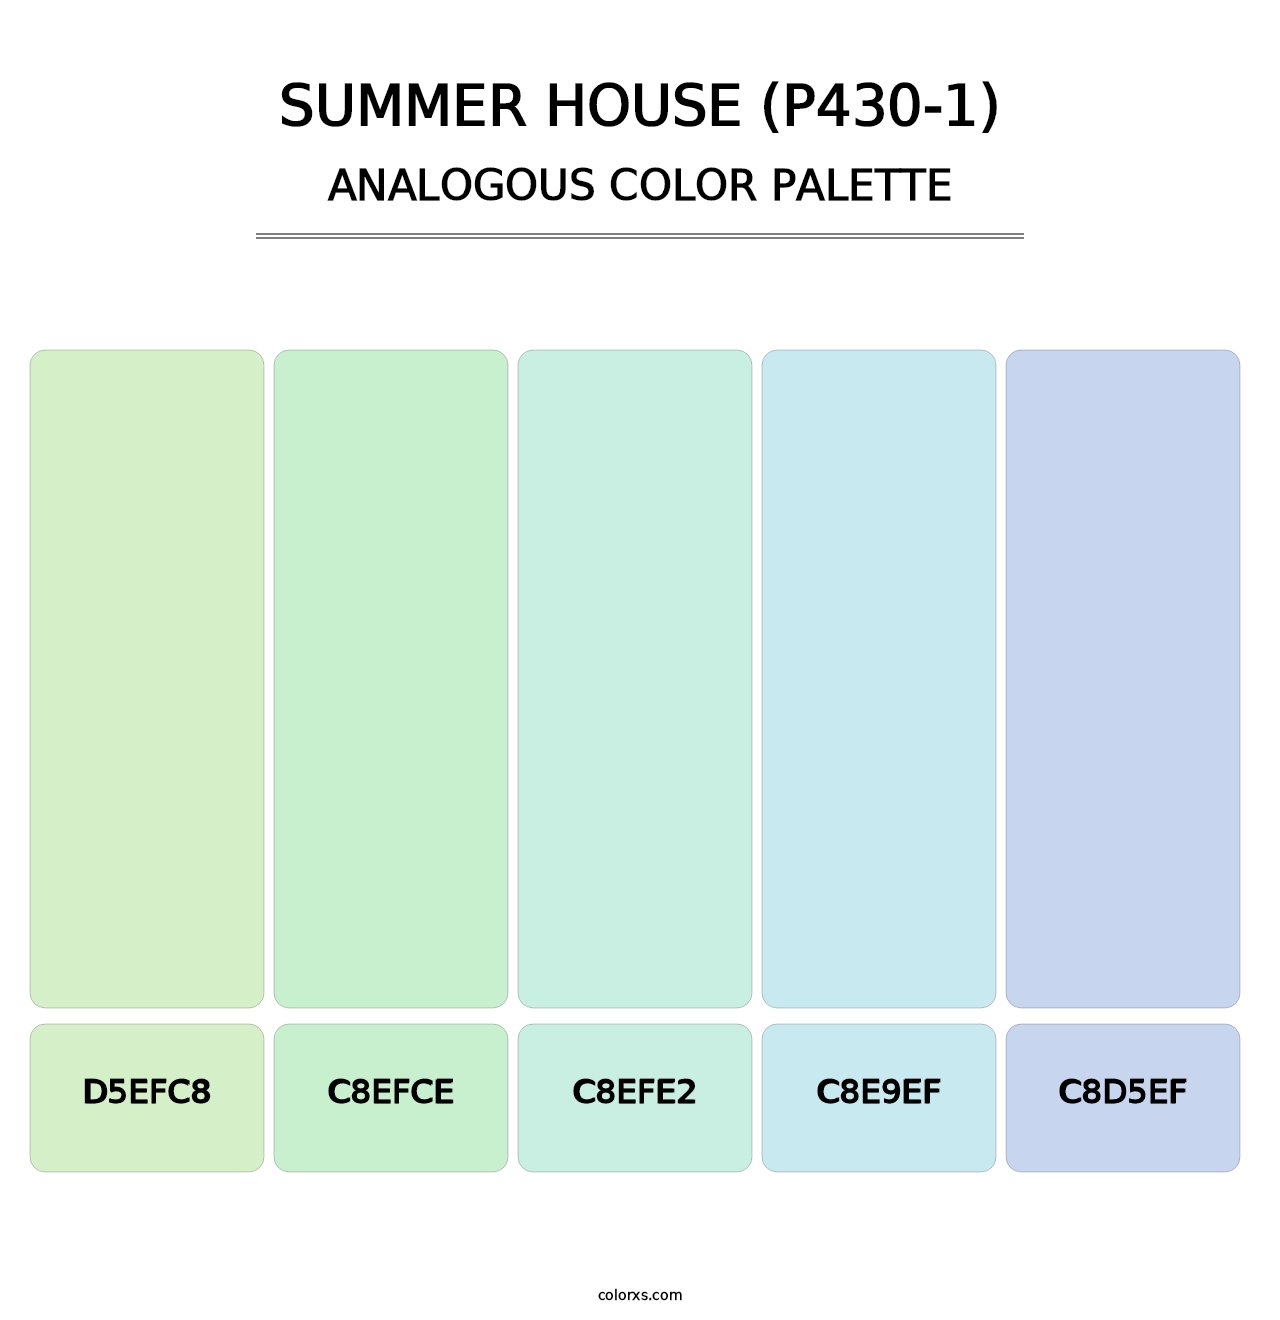 Summer House (P430-1) - Analogous Color Palette